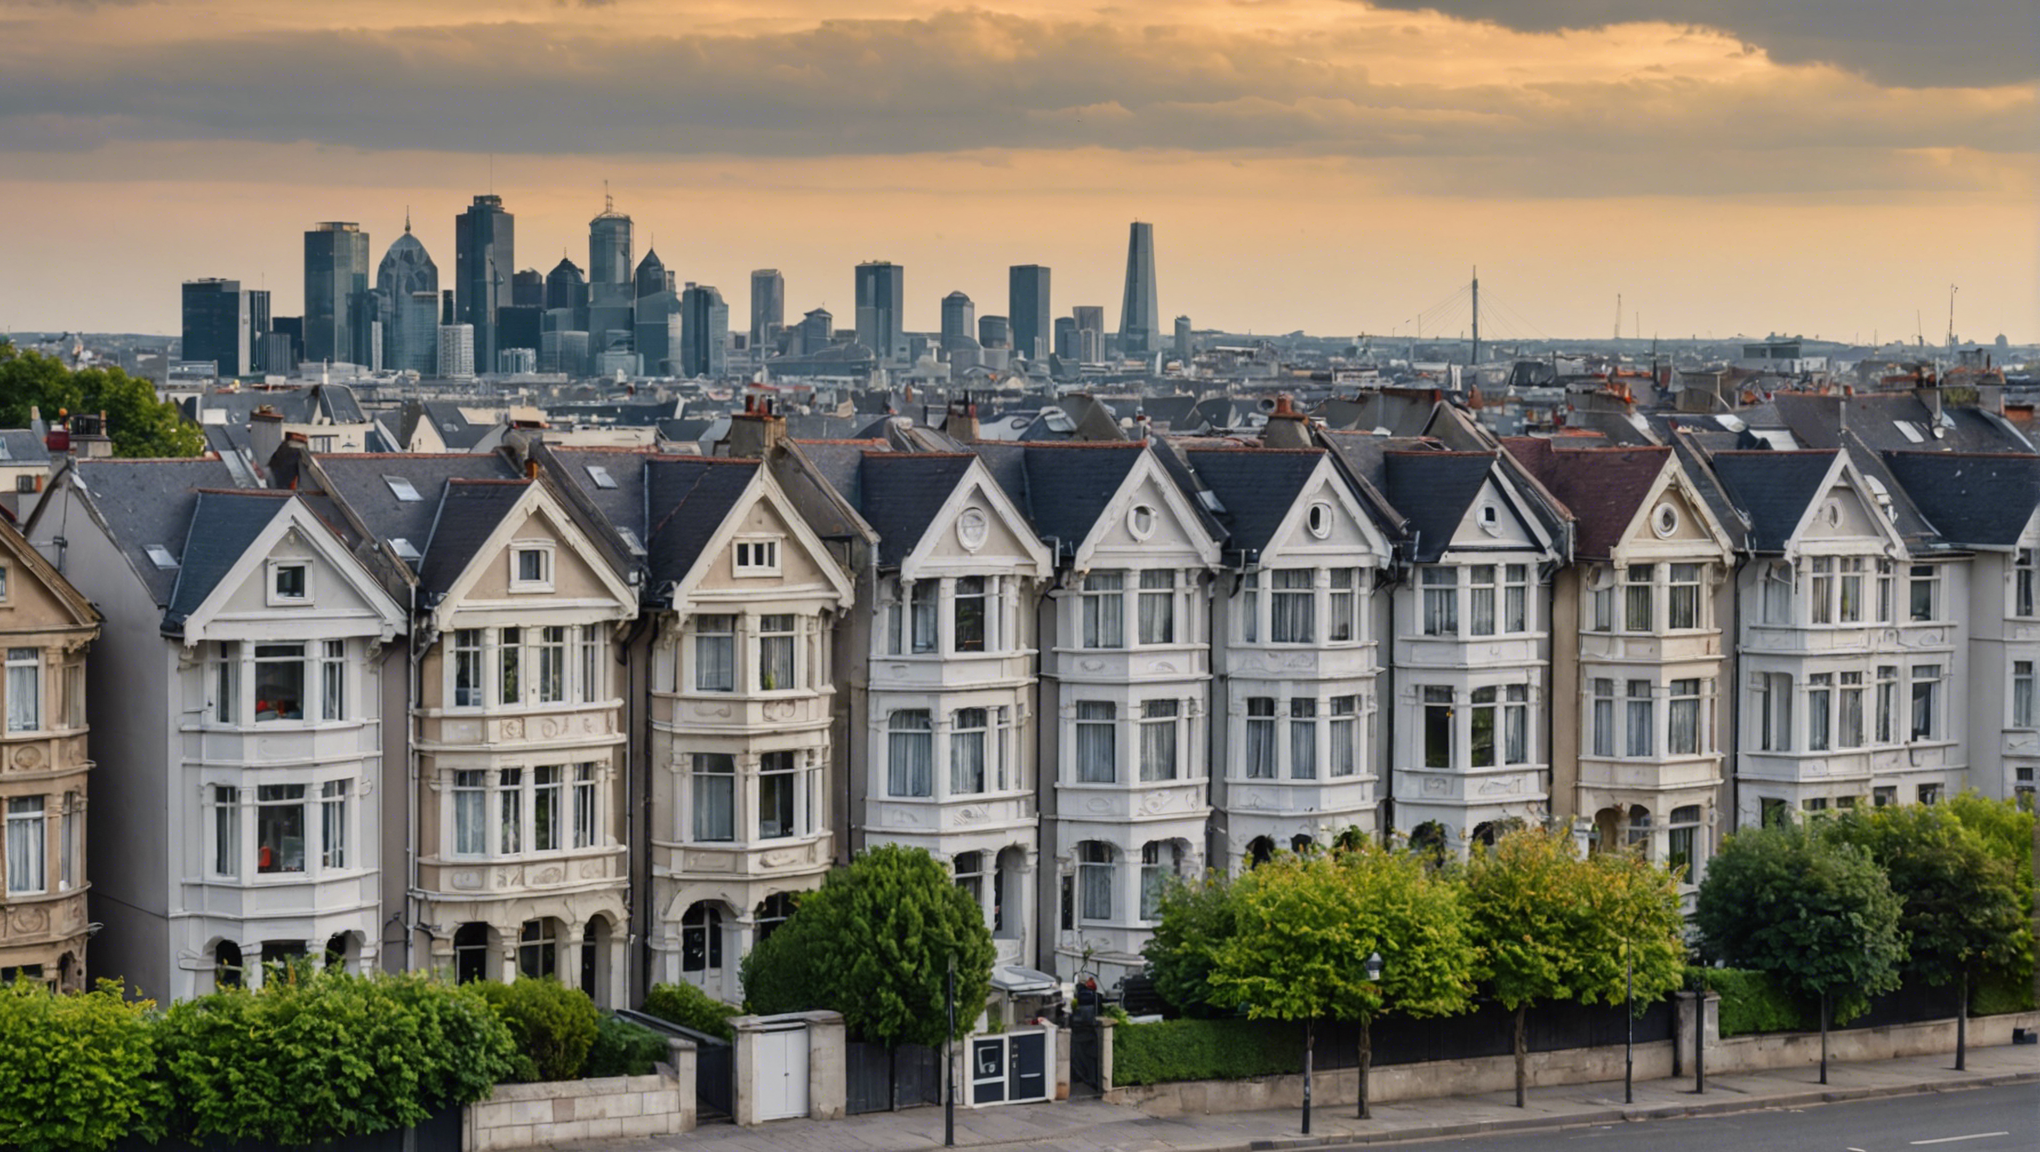 découvrez les derniers taux d'intérêt immobilier et obtenez les informations clés pour votre projet immobilier.